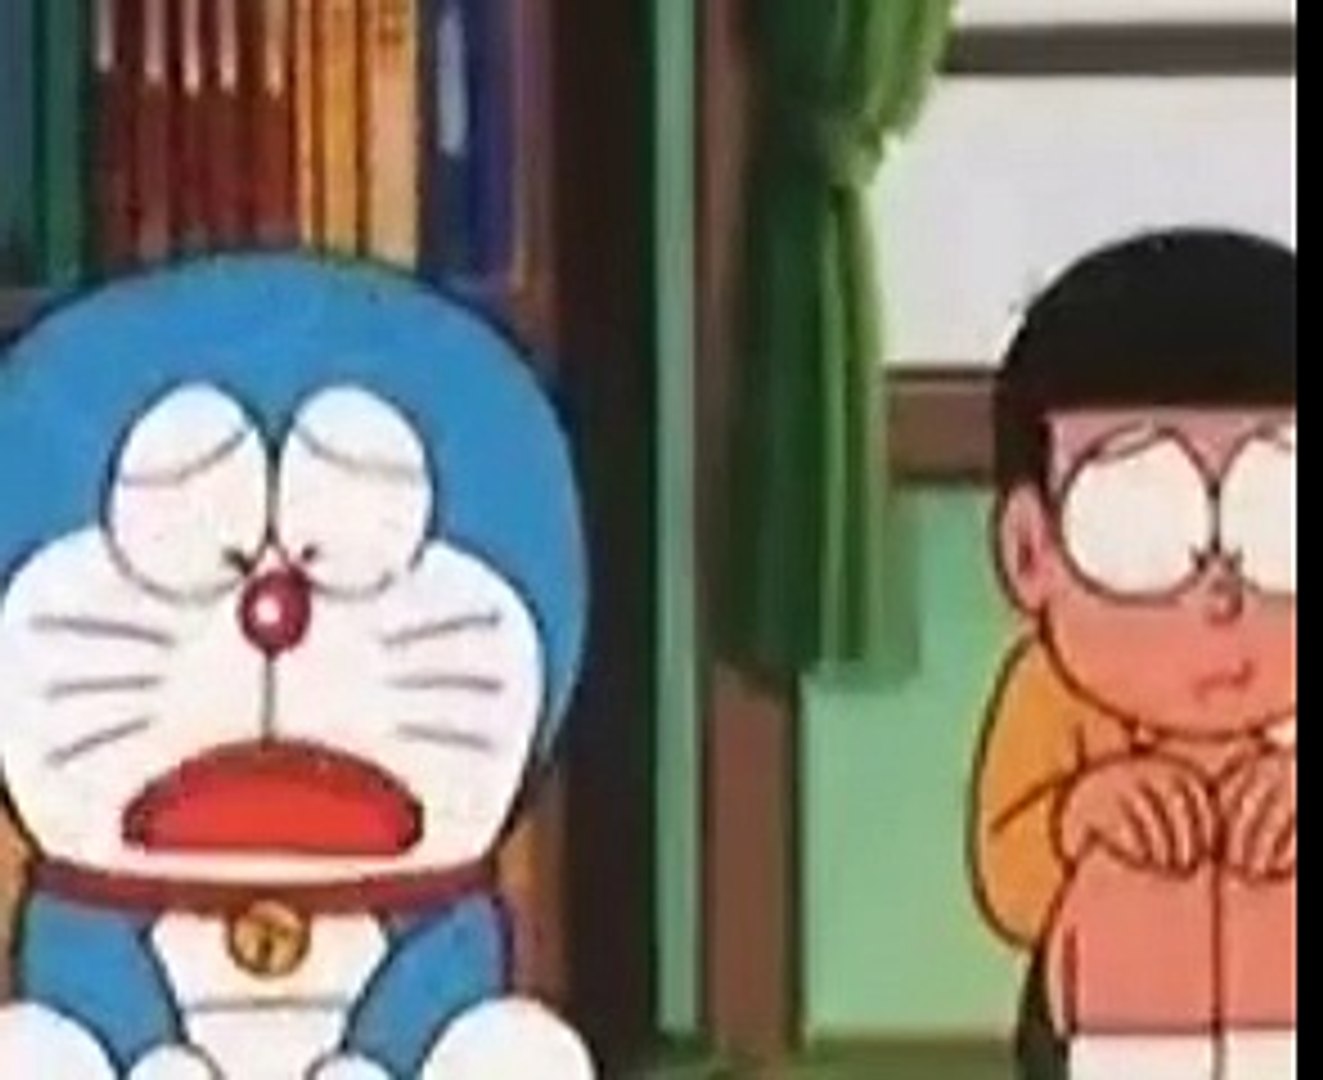 Doraemon Cartoon Episode 1 In Urdu Dailymotion